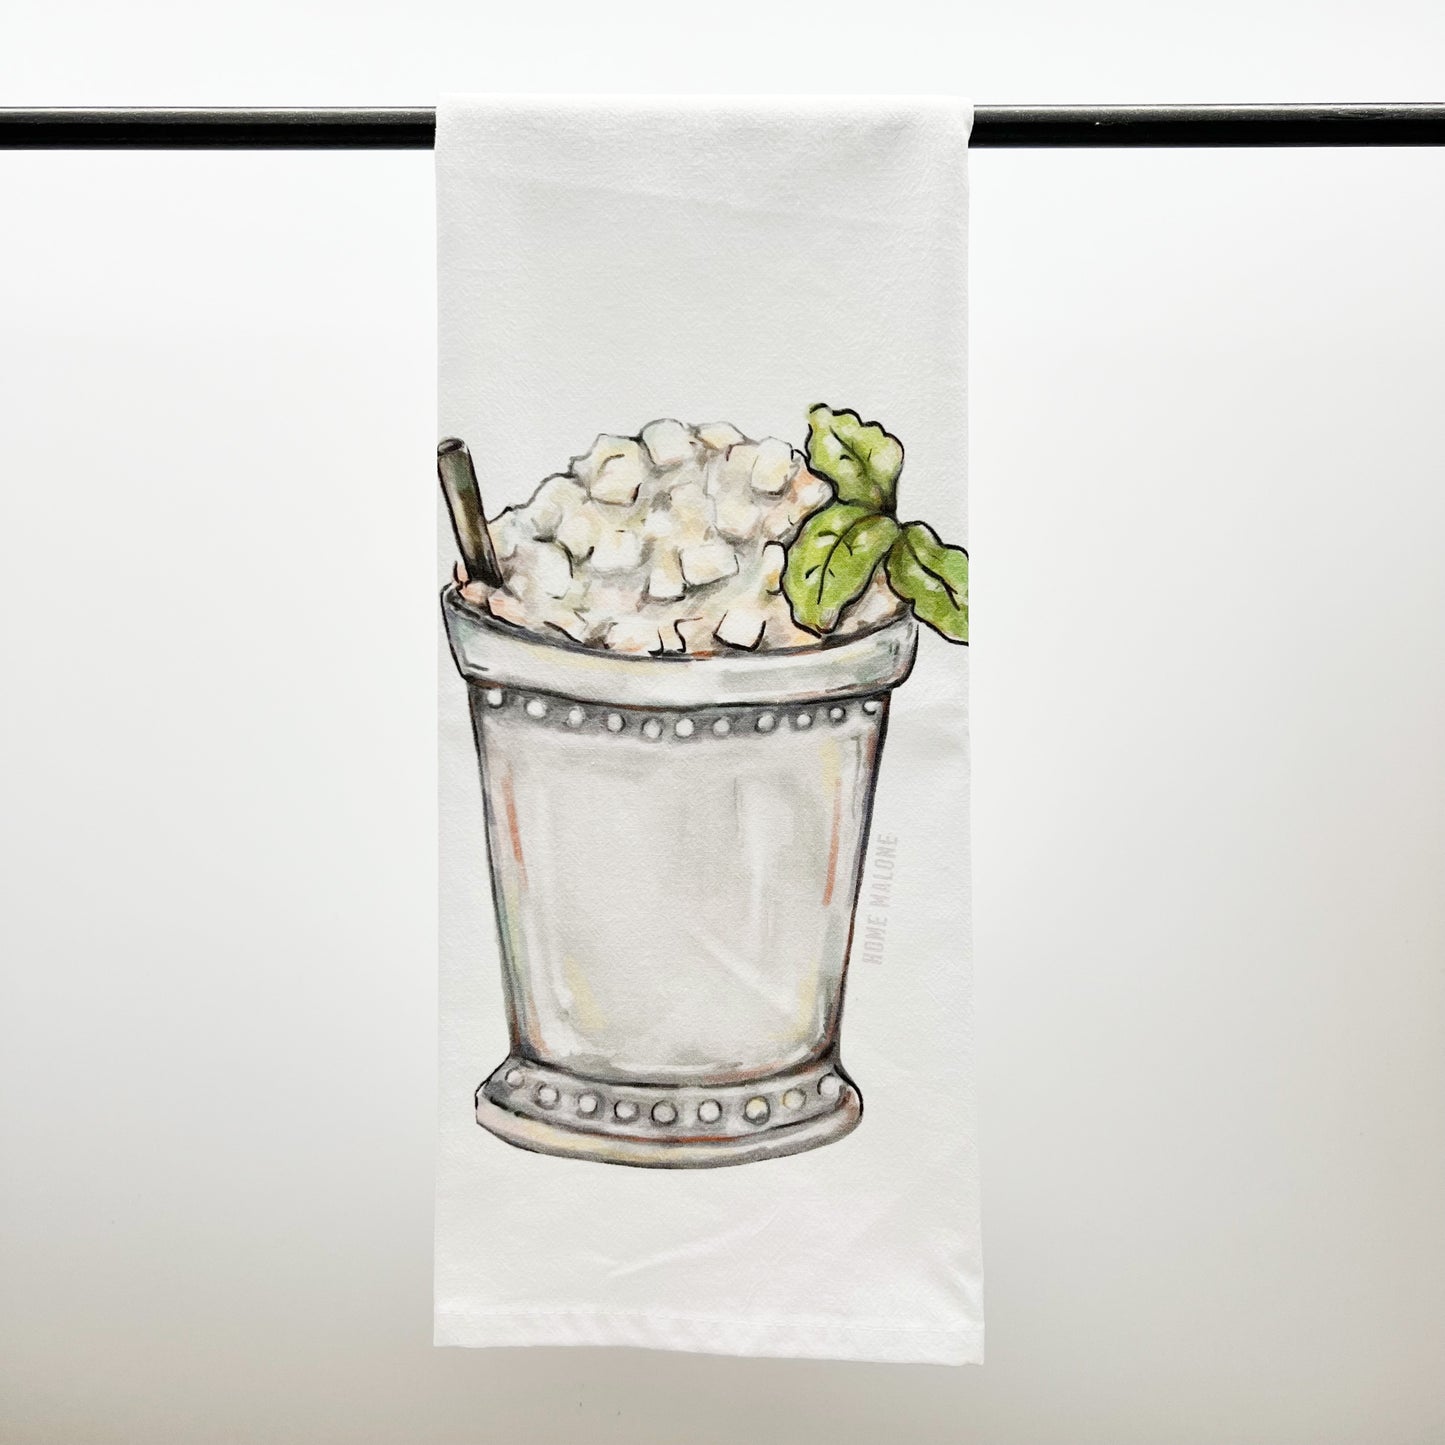 Mint Julep Towel - Derby Summer Cocktail Kitchen Decor